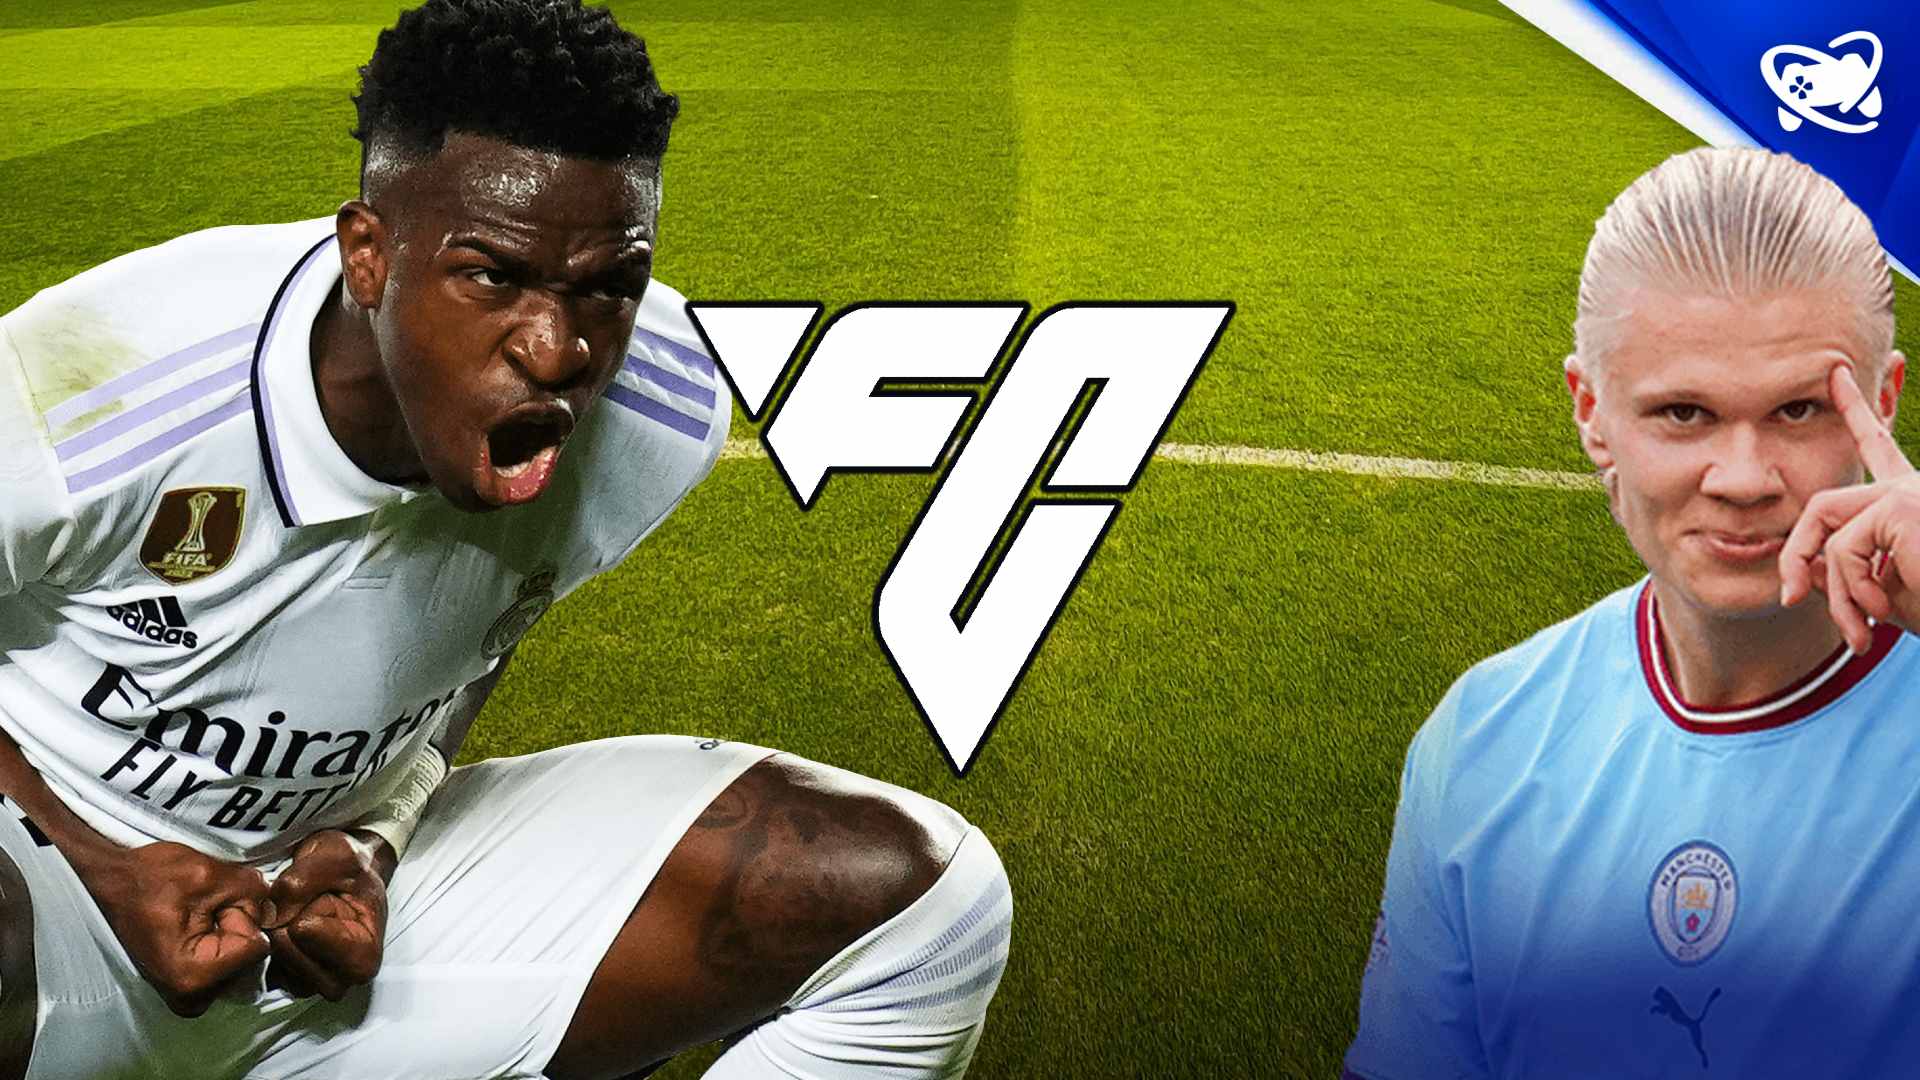 EA FC 24: preço, data de lançamento, capa e novidades do novo FIFA, fifa